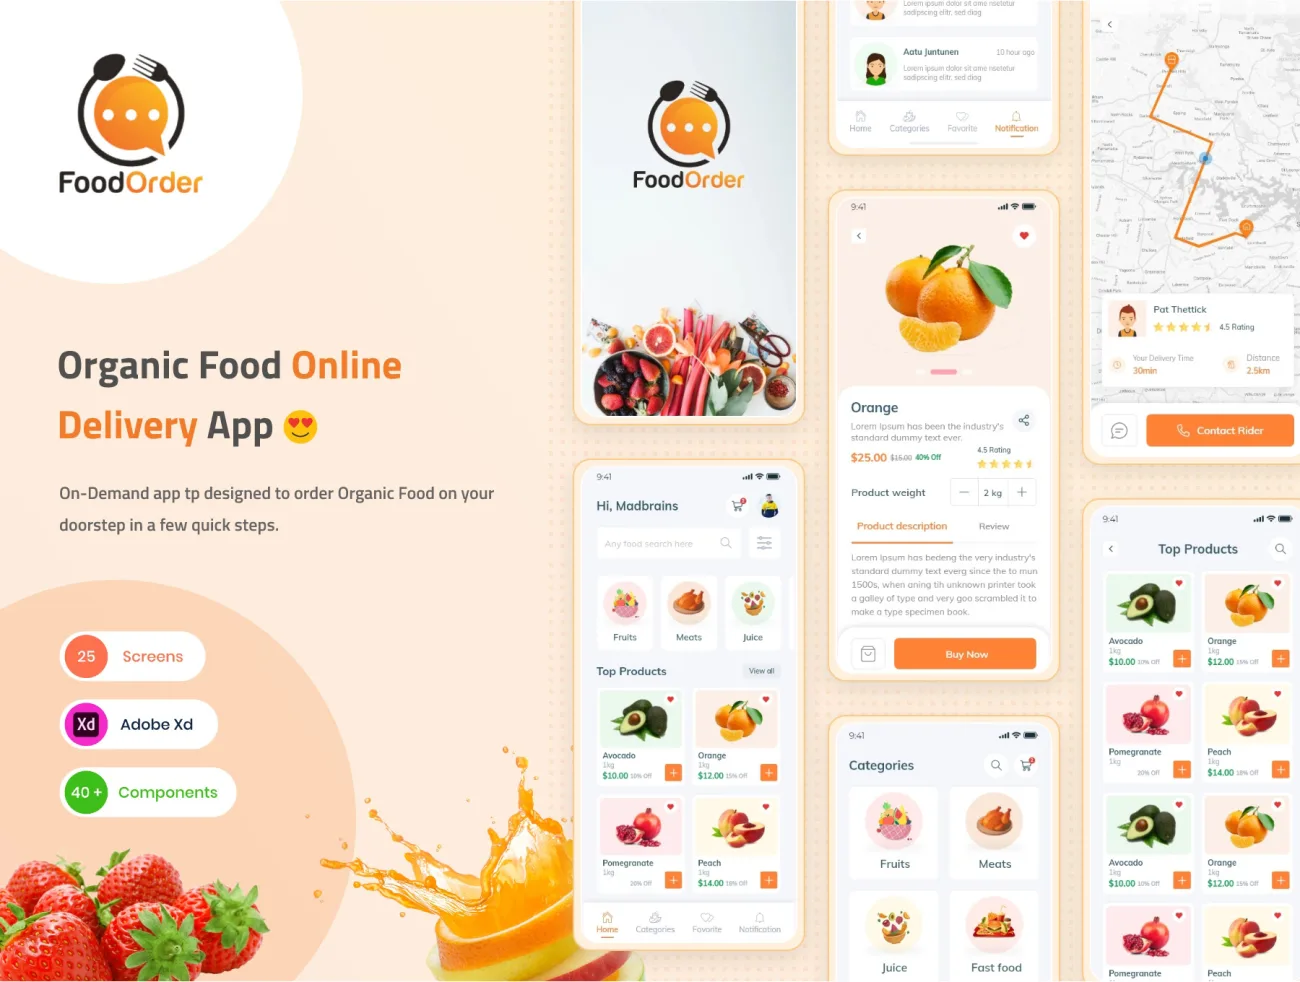 食品日用百货超市应用UI套件 Food Order - Grocery Application UI kit xd格式-UI/UX、ui套件、卡片式、地图、网购、表单、详情、预订-到位啦UI